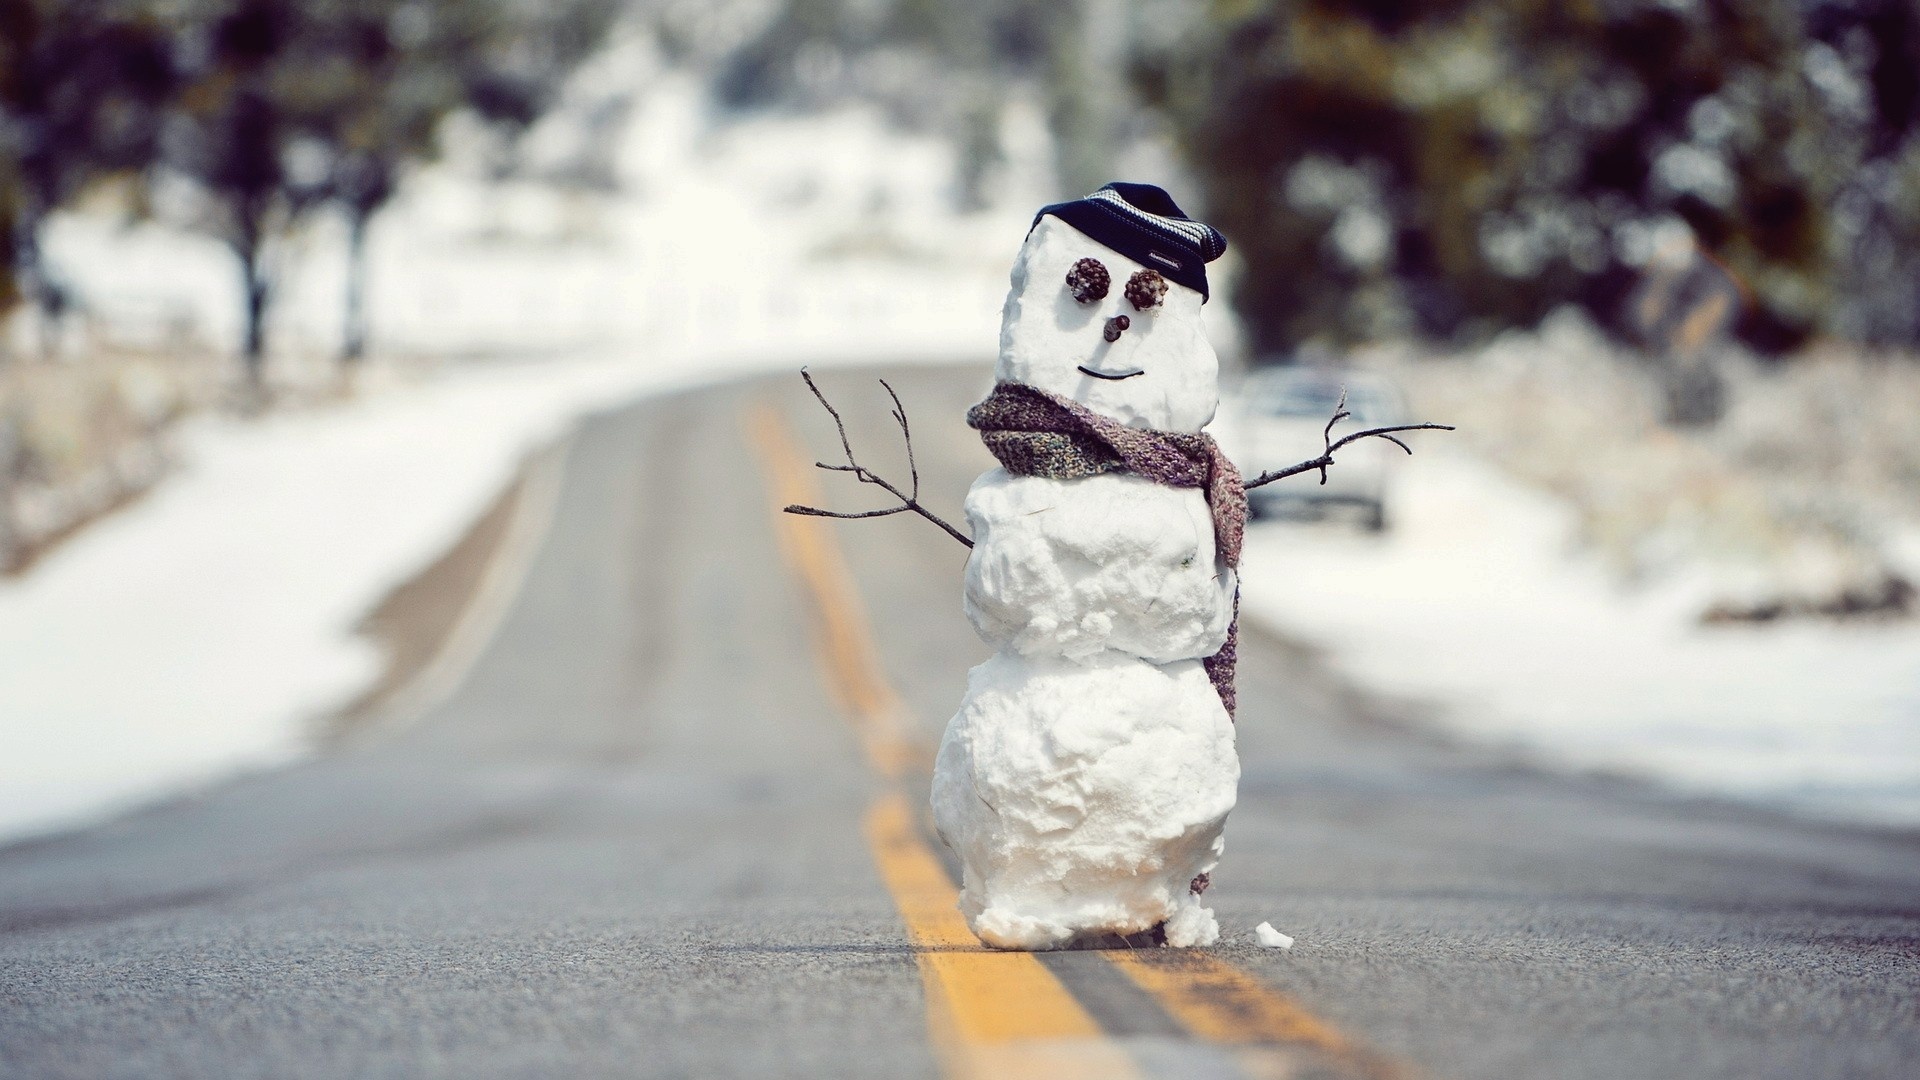 Скачать картинку Зима, Снеговик, Фотографии в телефон бесплатно.